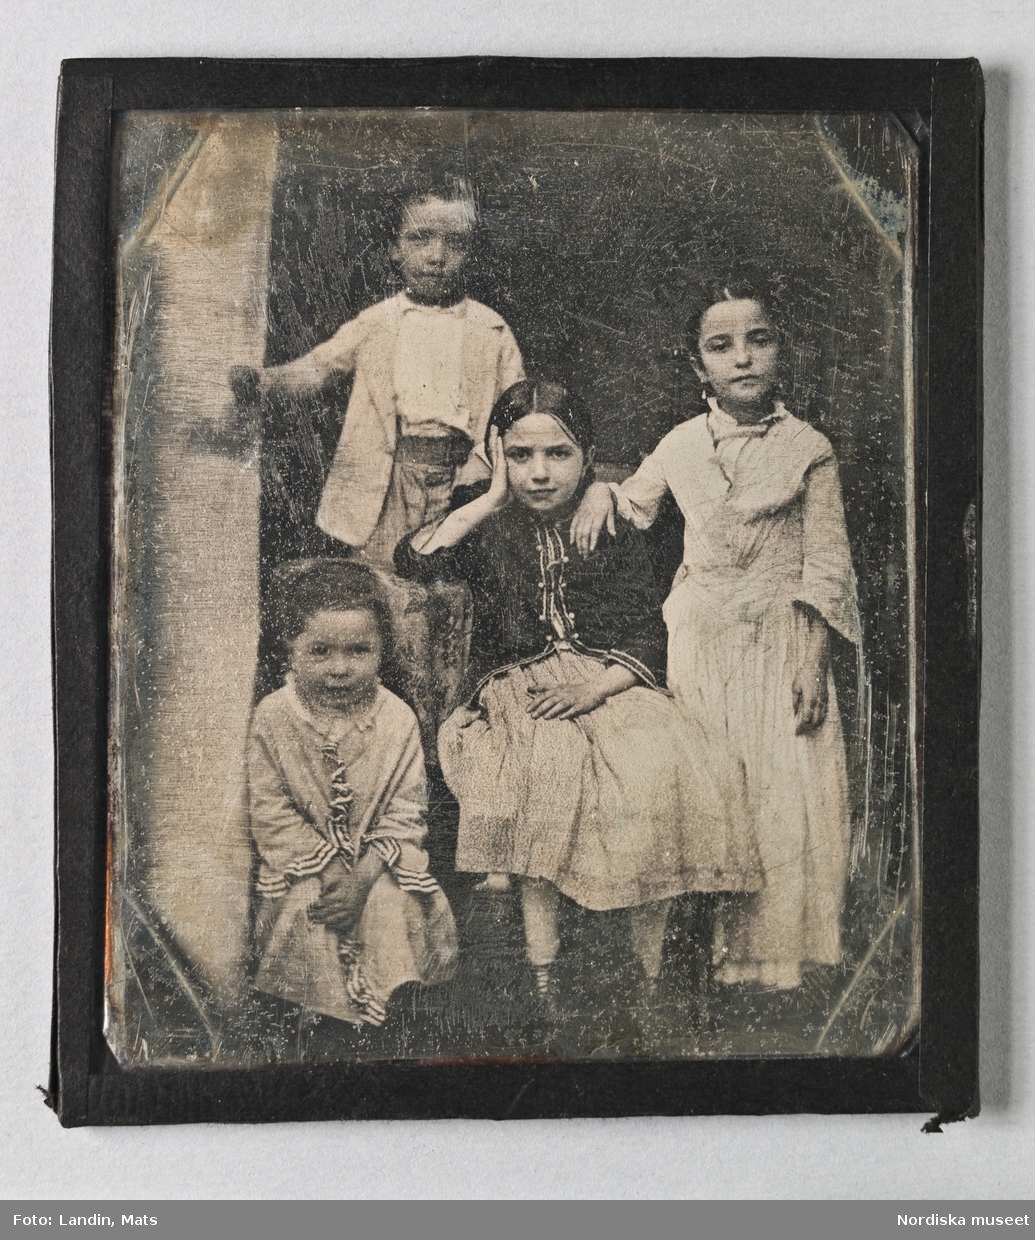 Dagerrotyp / daguerreotyp i ram, gruppbild av fyra barn, en pojke och tre flickor. Nordiska museet inv.nr 205460
-
Portrait of four children. Sixth-plate daguerreotype.